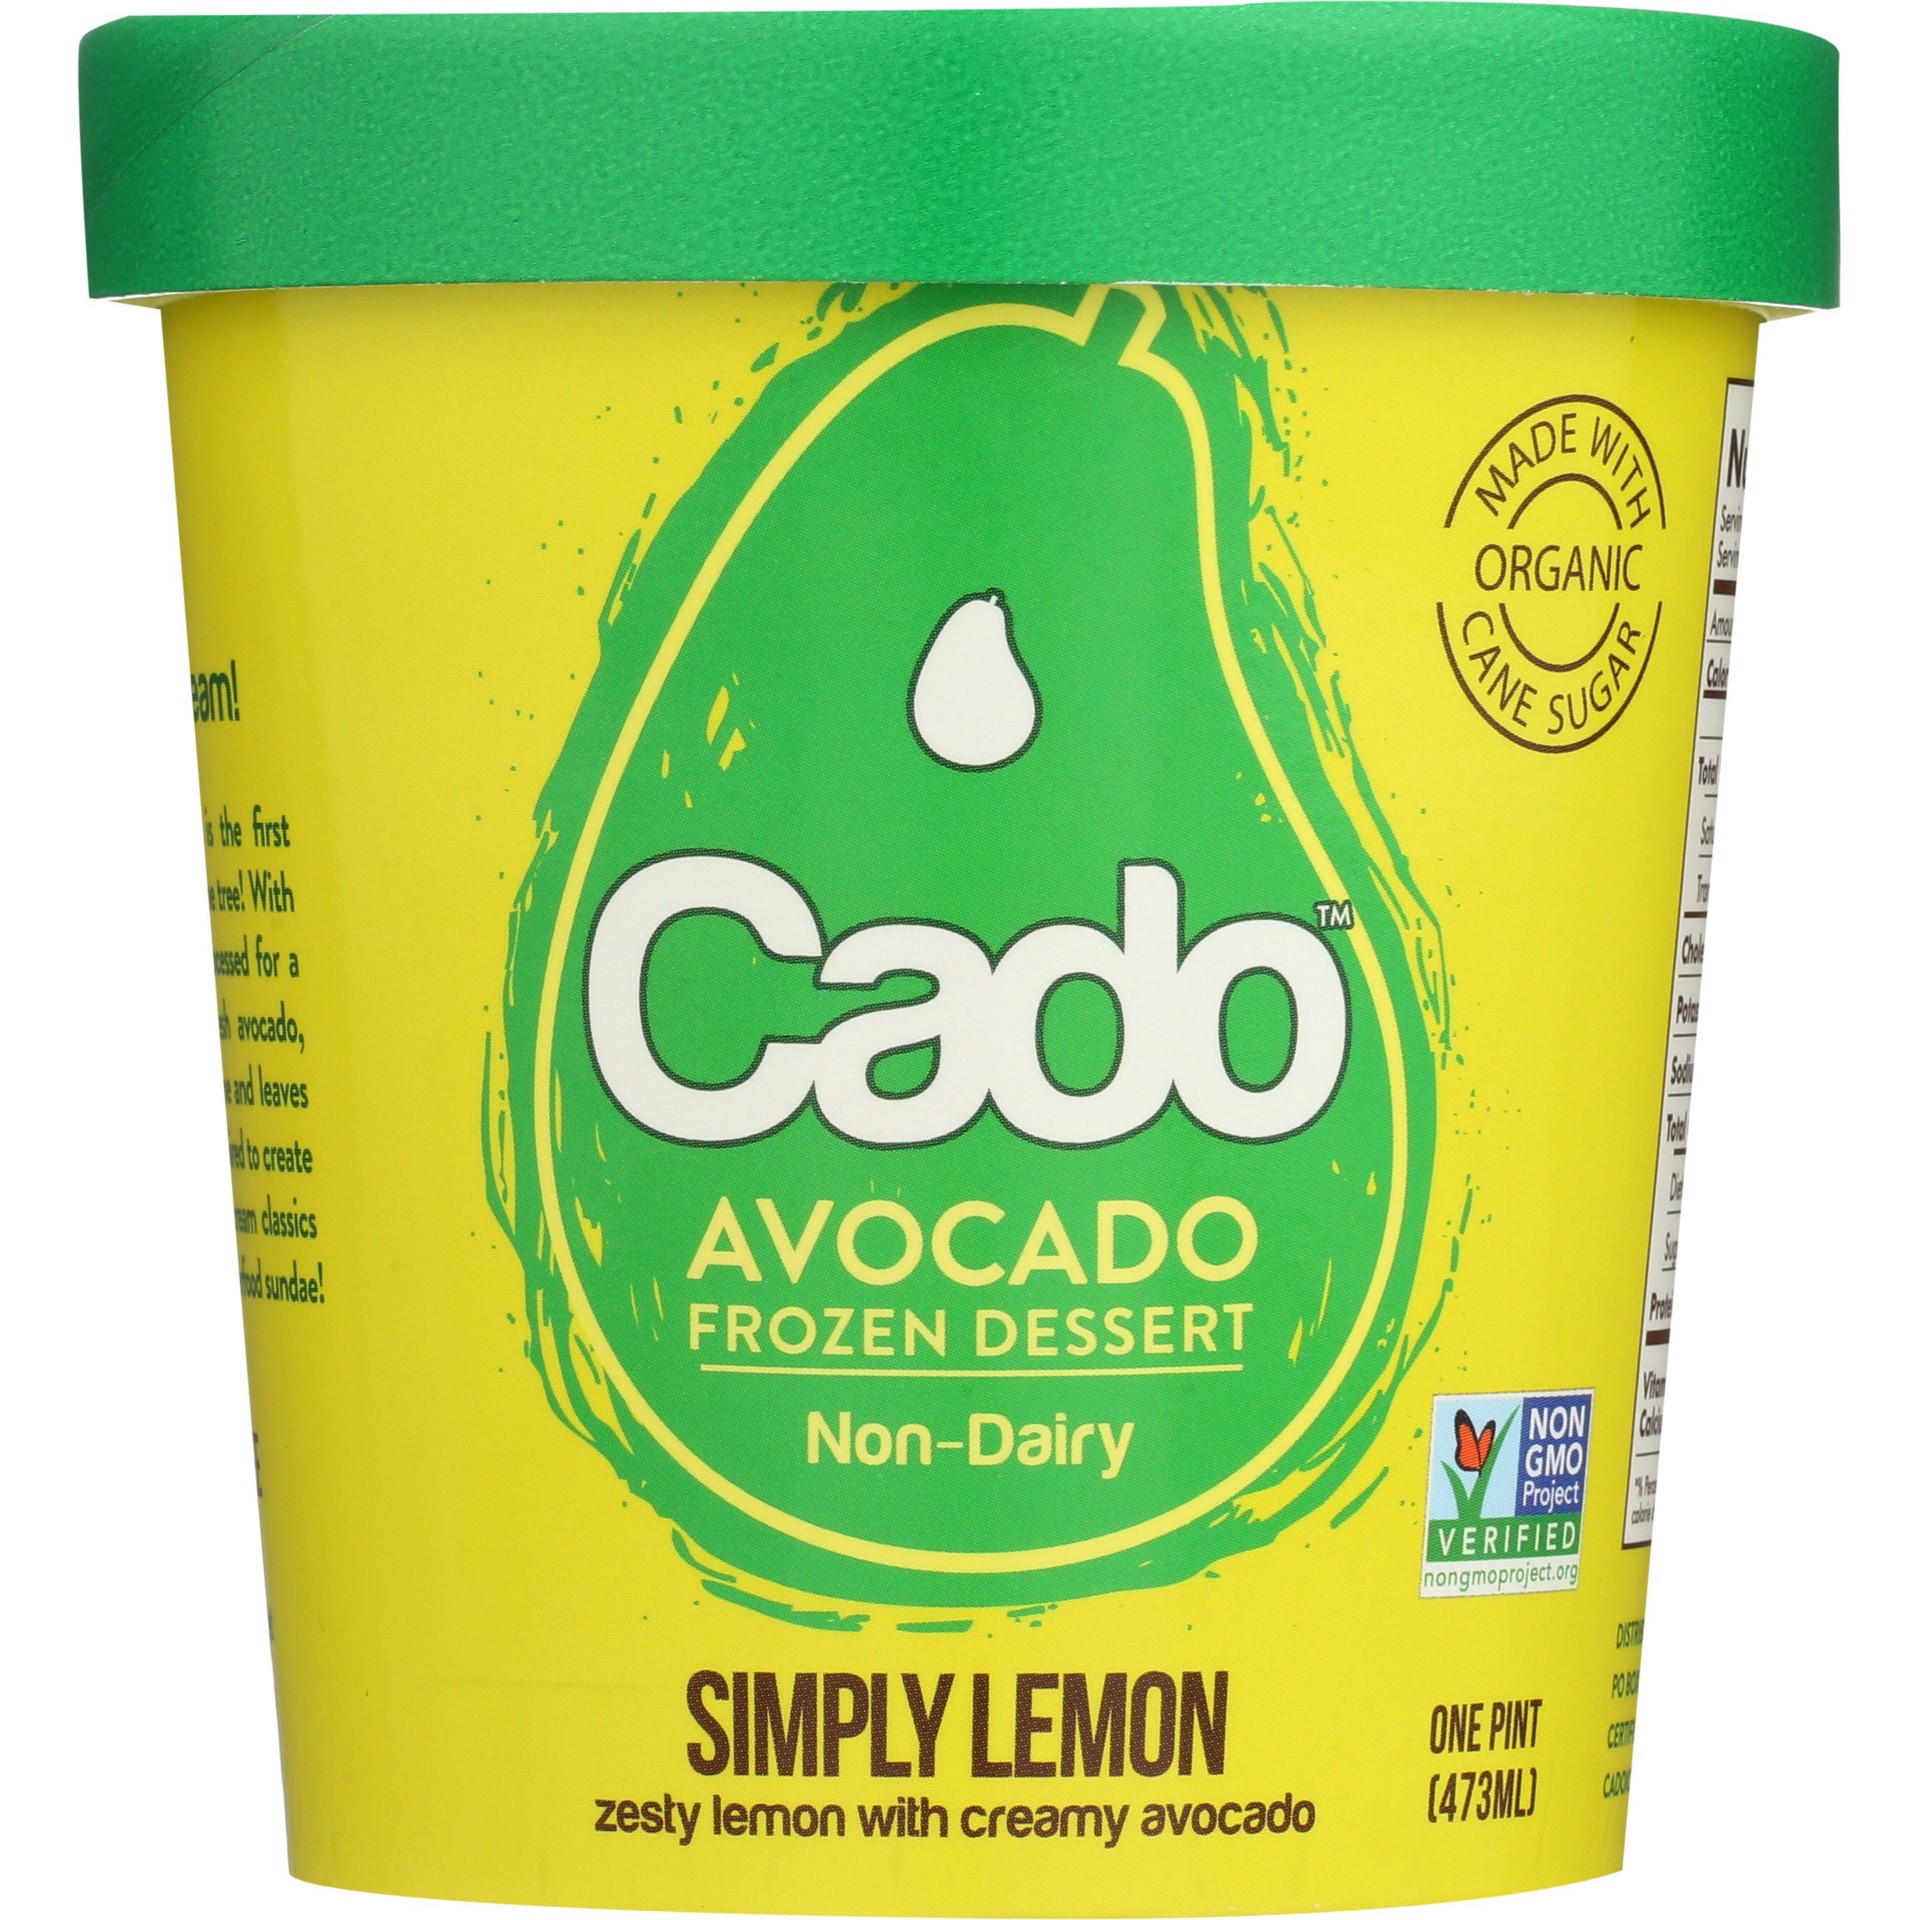 slide 1 of 4, Cado Non-Dairy Avocado Frozen Dessert - Simply Lemon, 1 pint